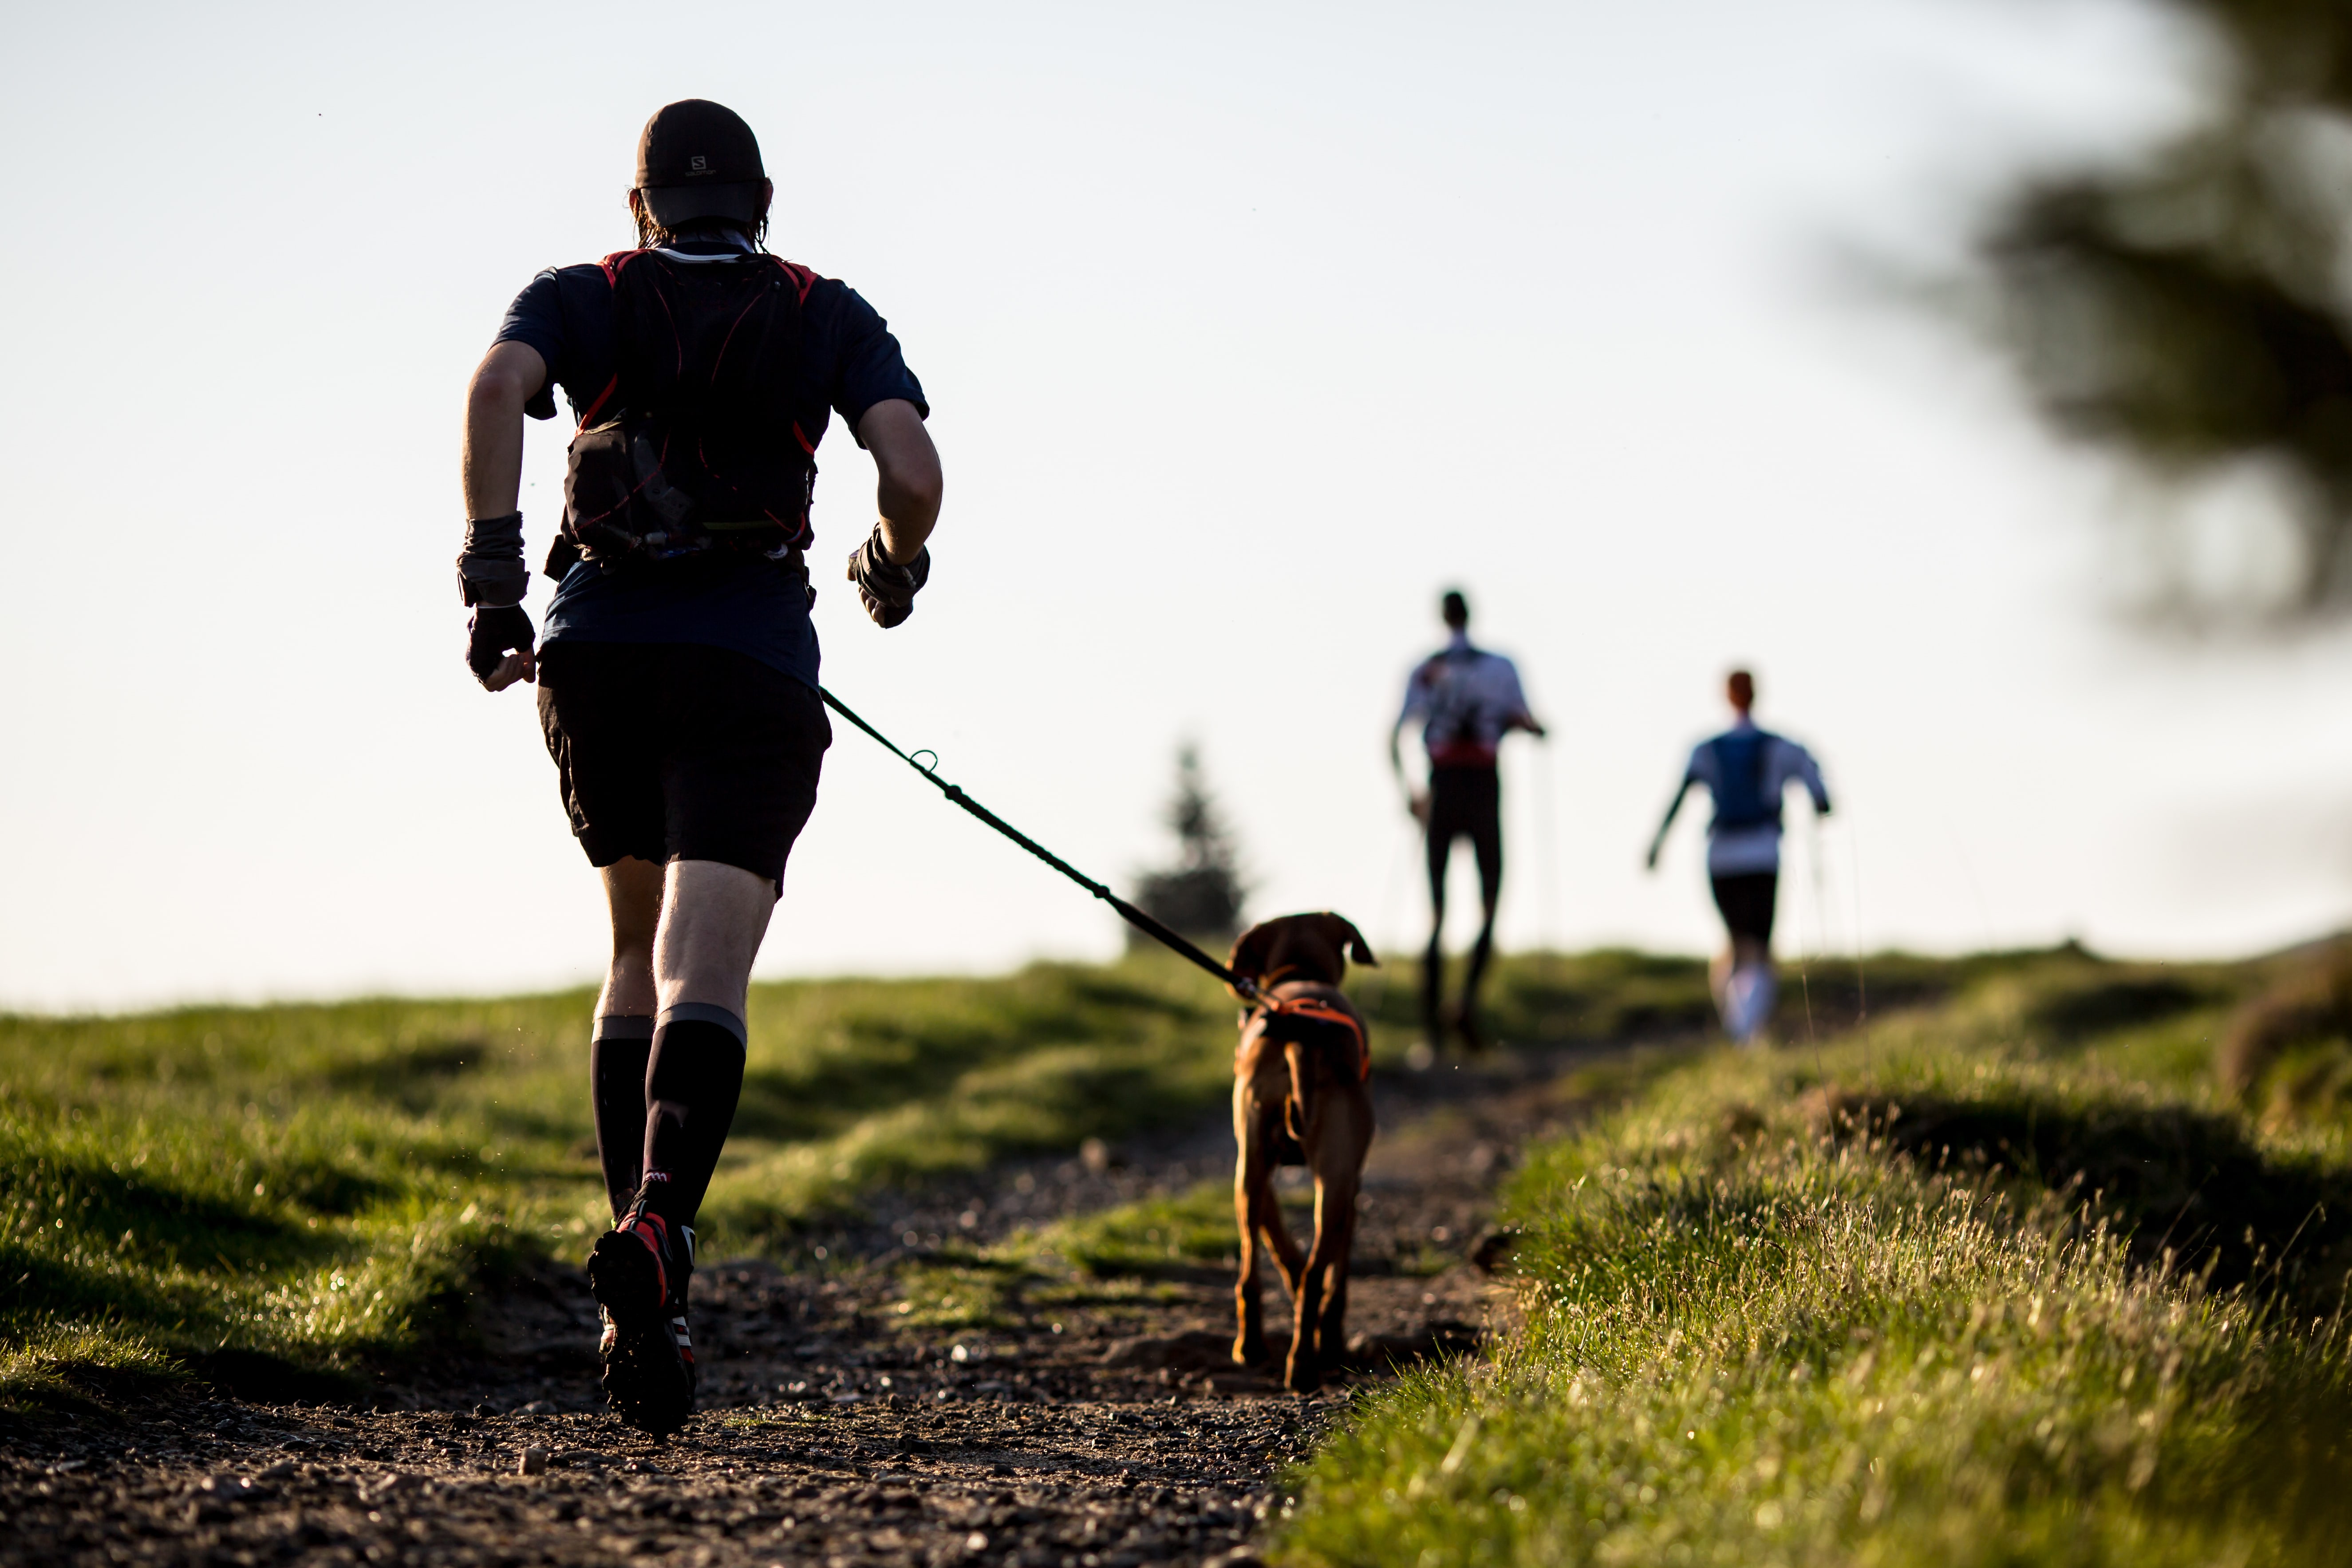 courir avec son chien, un vrai sport à deux !